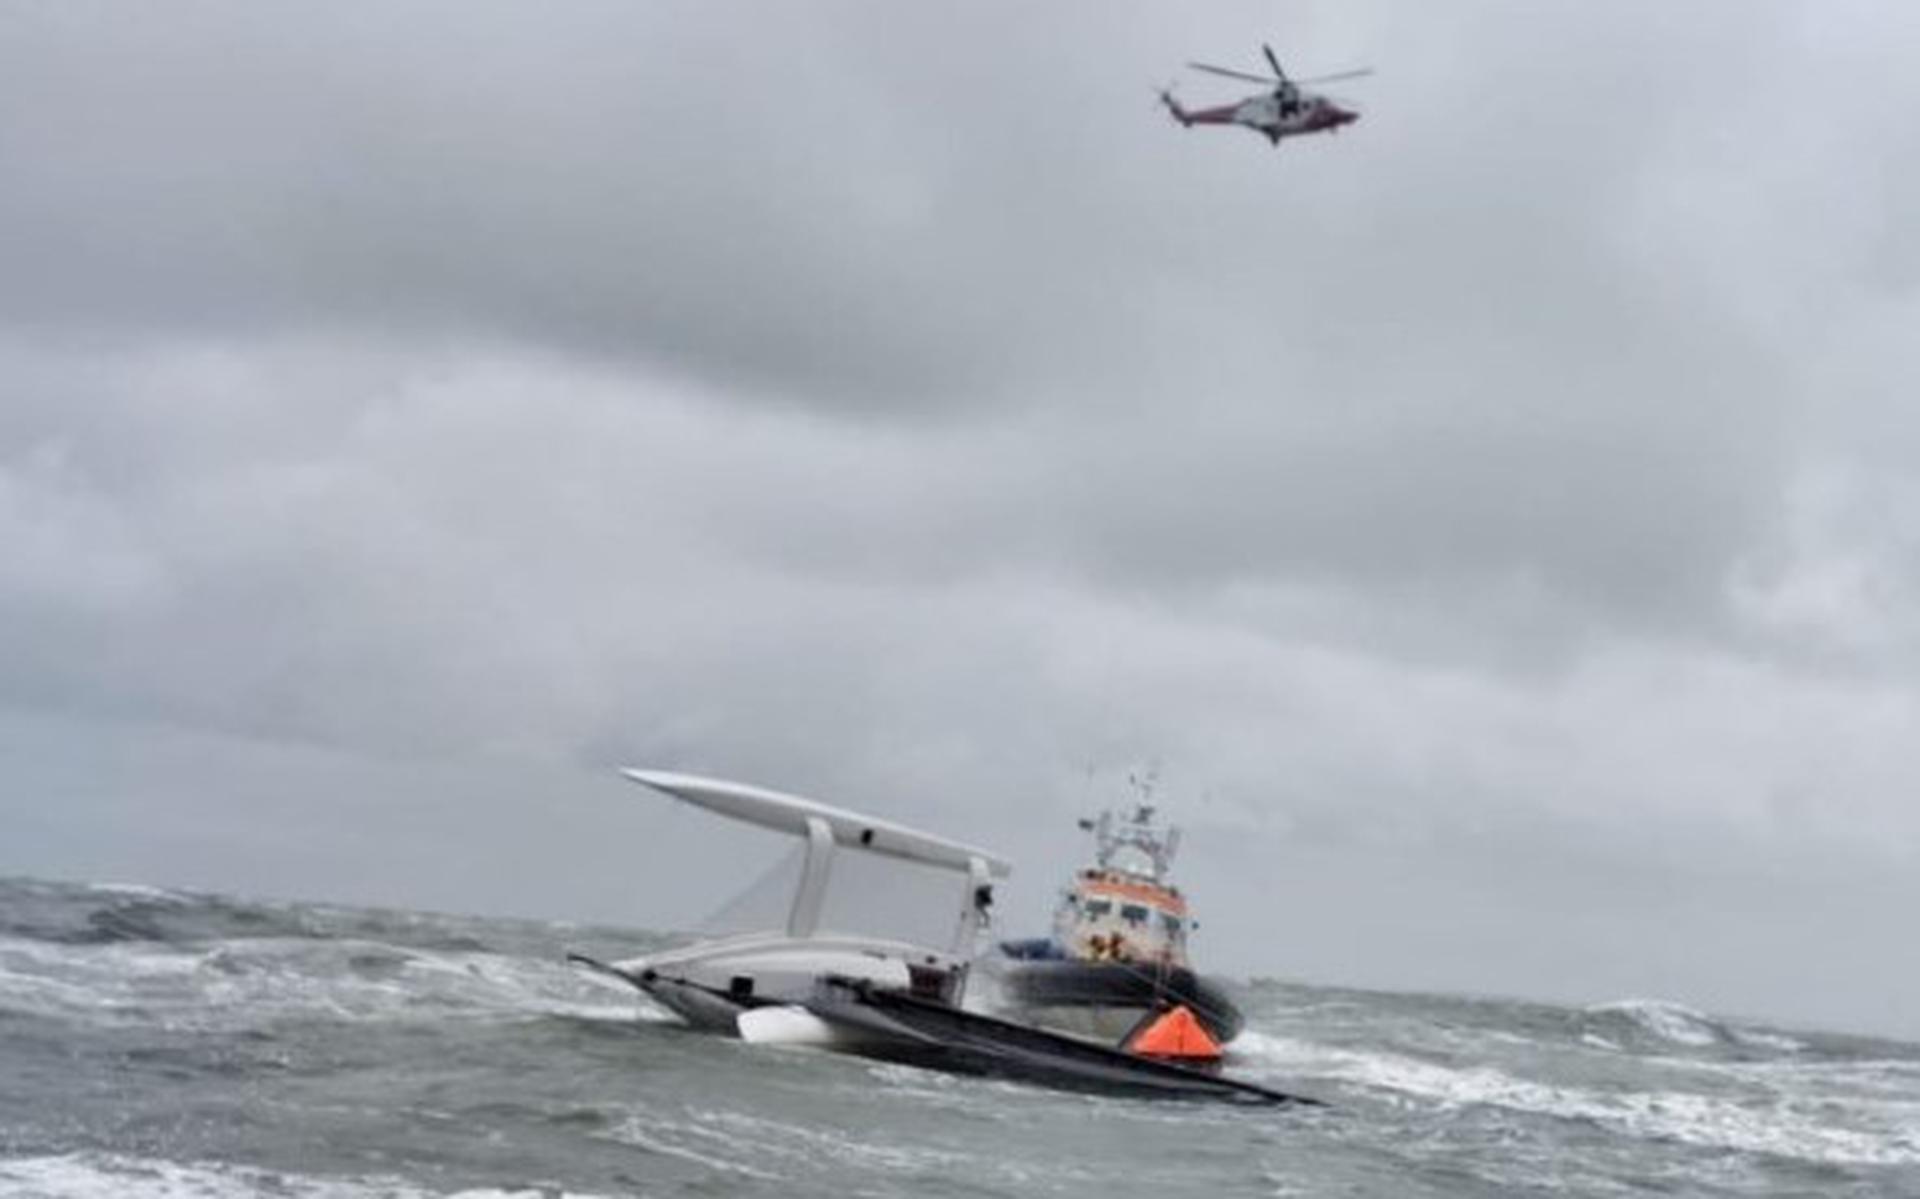 De redders troffen de Eole dinsdagmiddag op de Noordzee omgeslagen aan. Foto: KNRM Terschelling Paal 8
 
